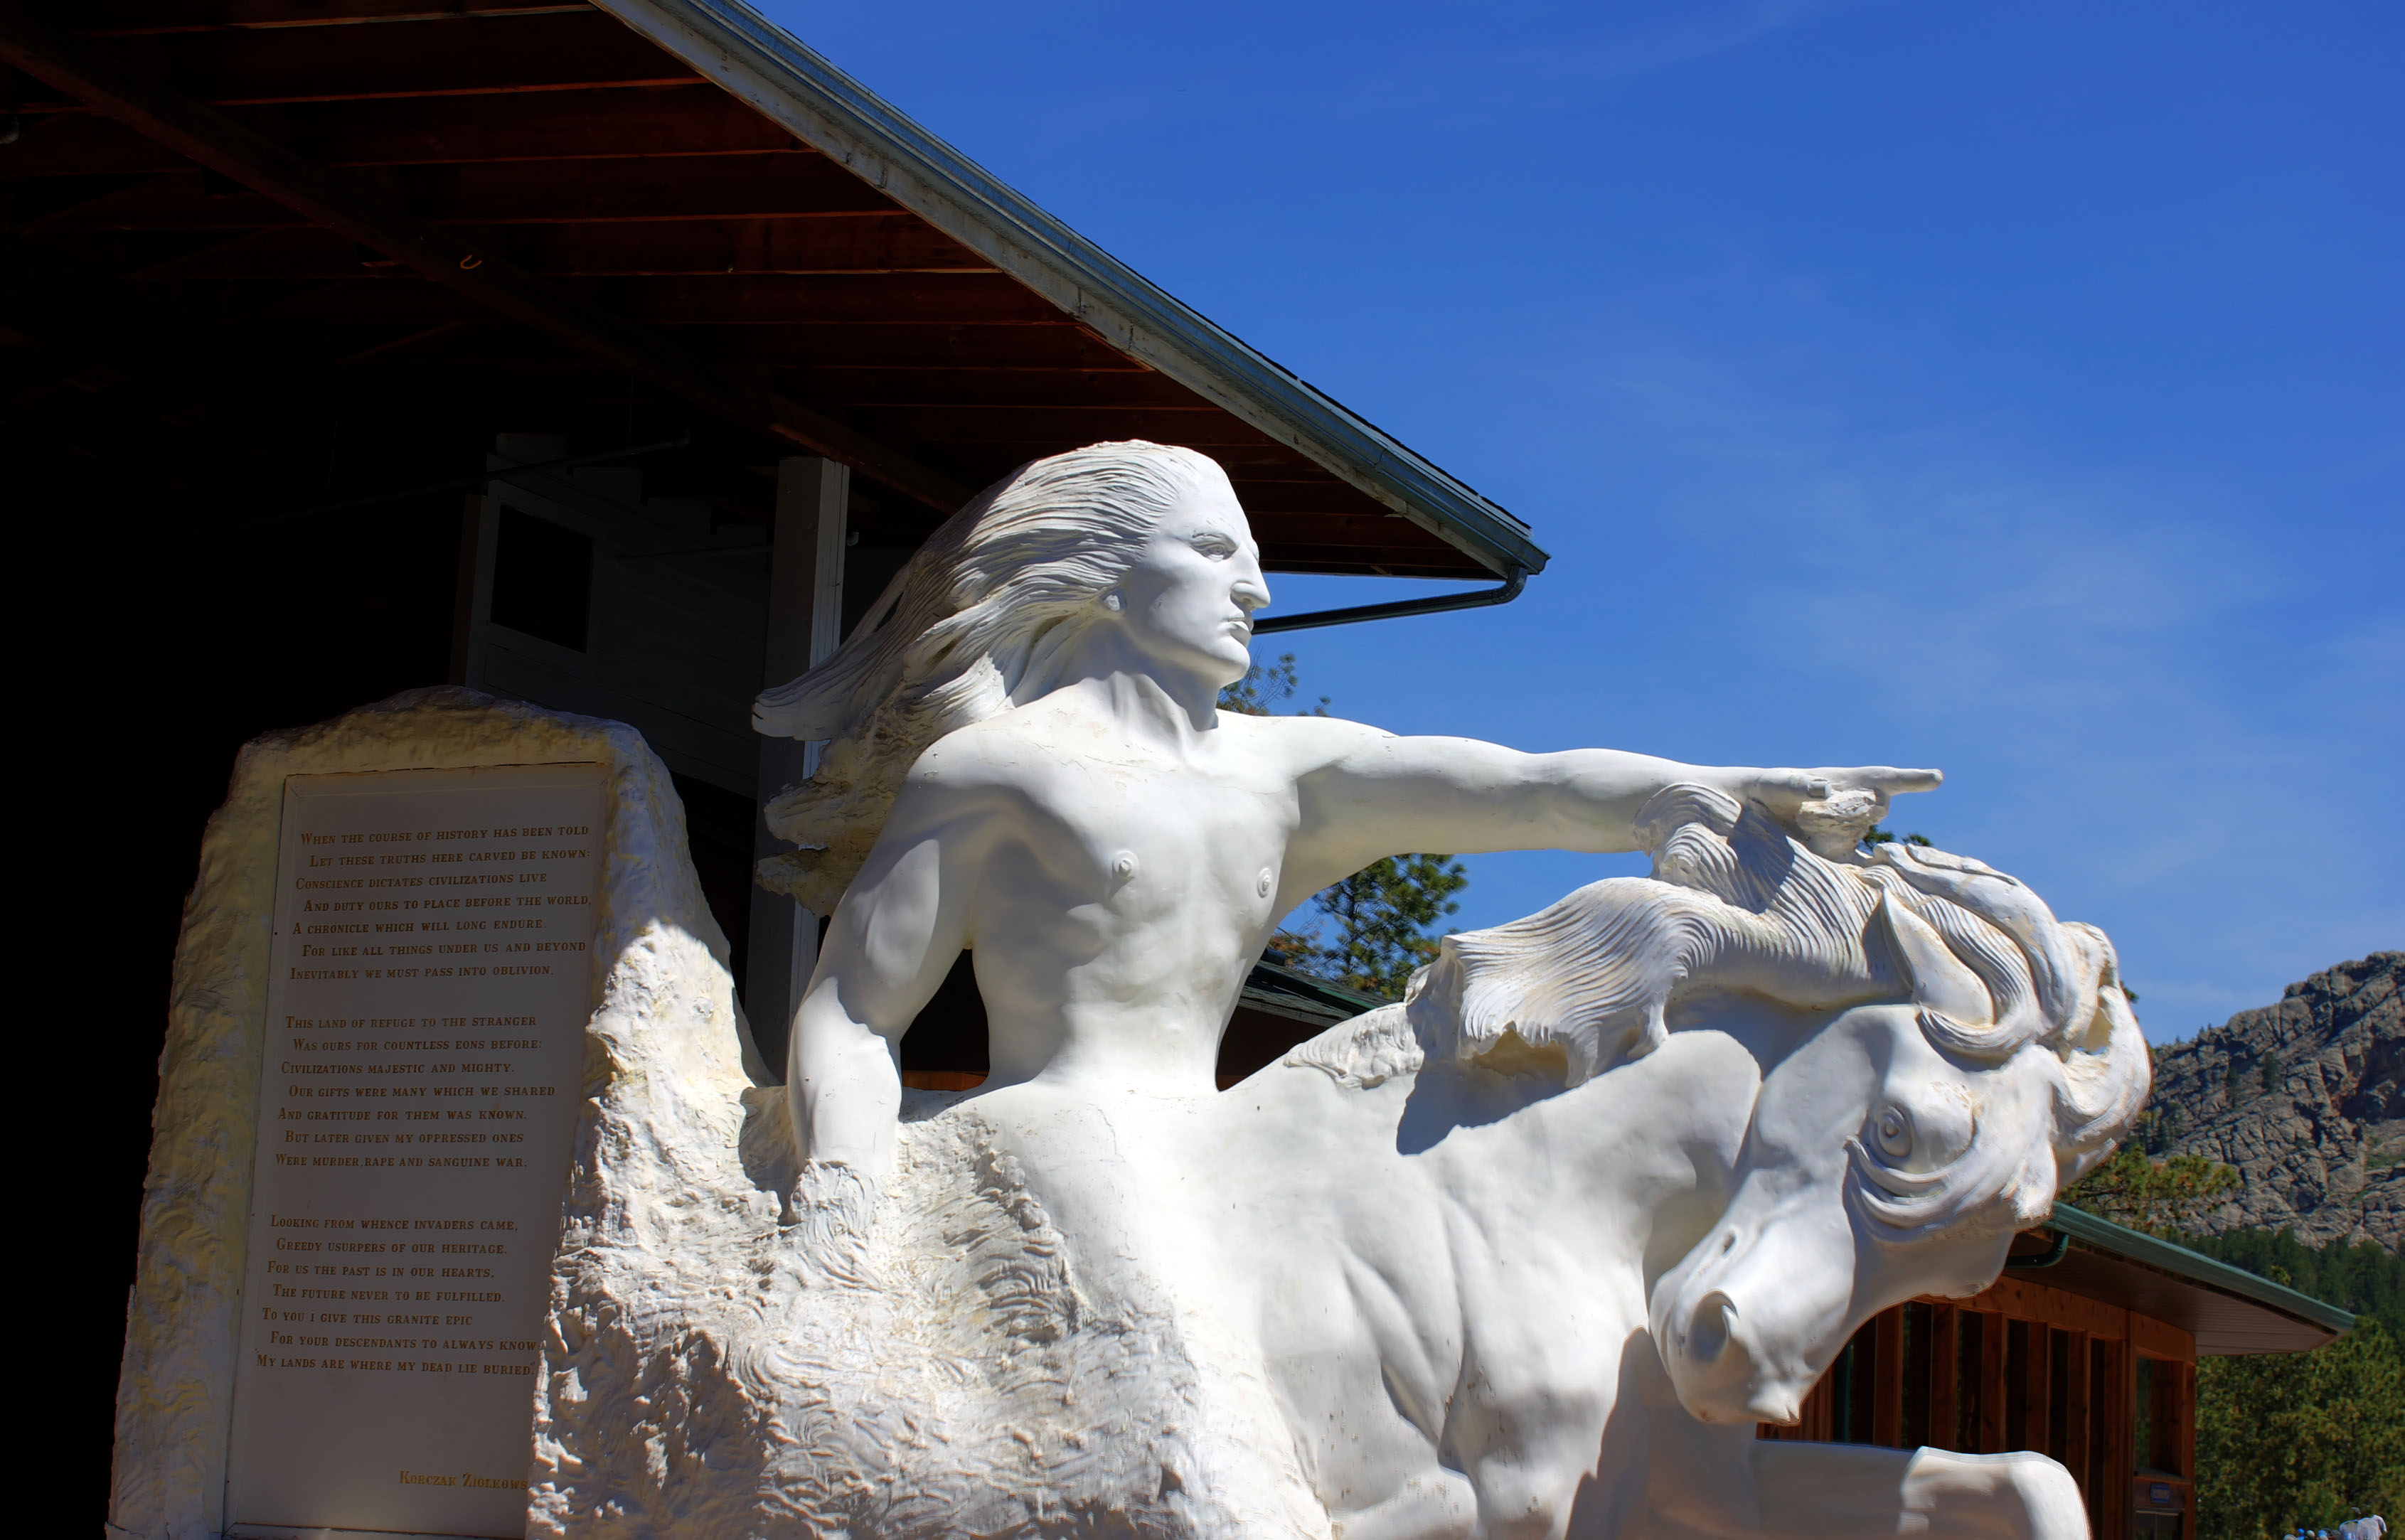 Closer view of crazyhorse statue in the Black Hills, South Dakota ...